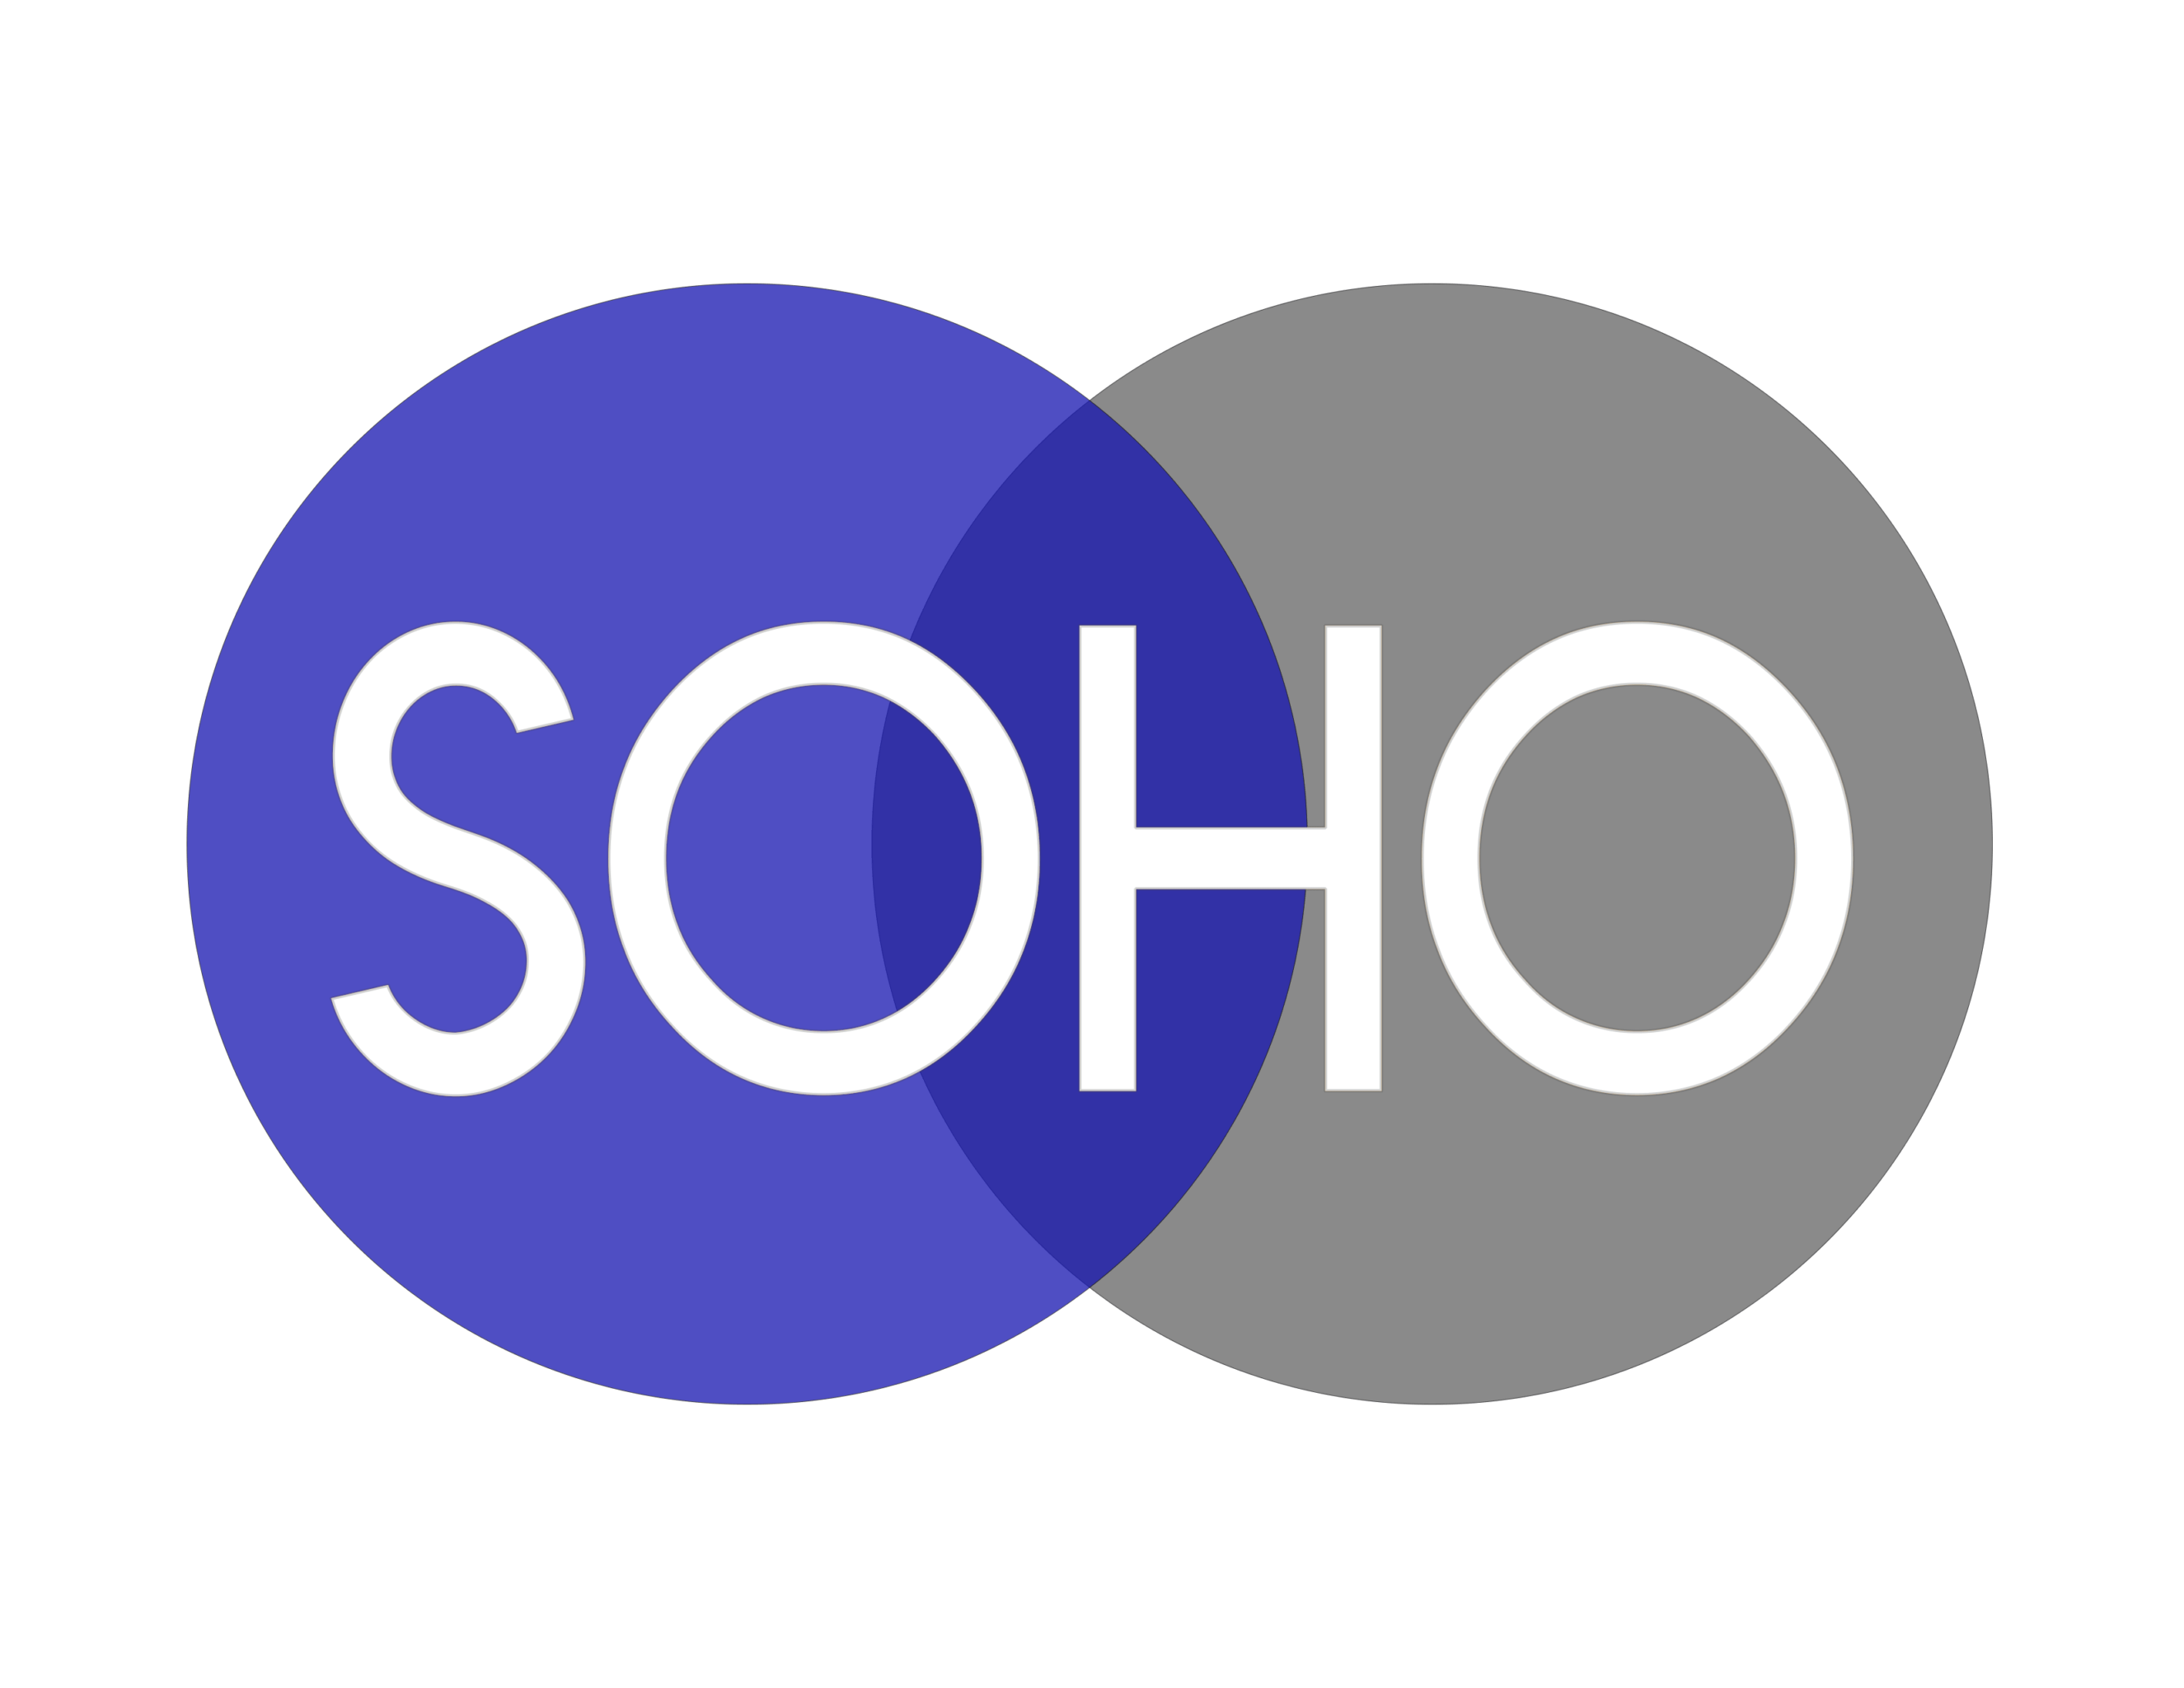 Soho Logo - SOHO logo - The University of Tulsa